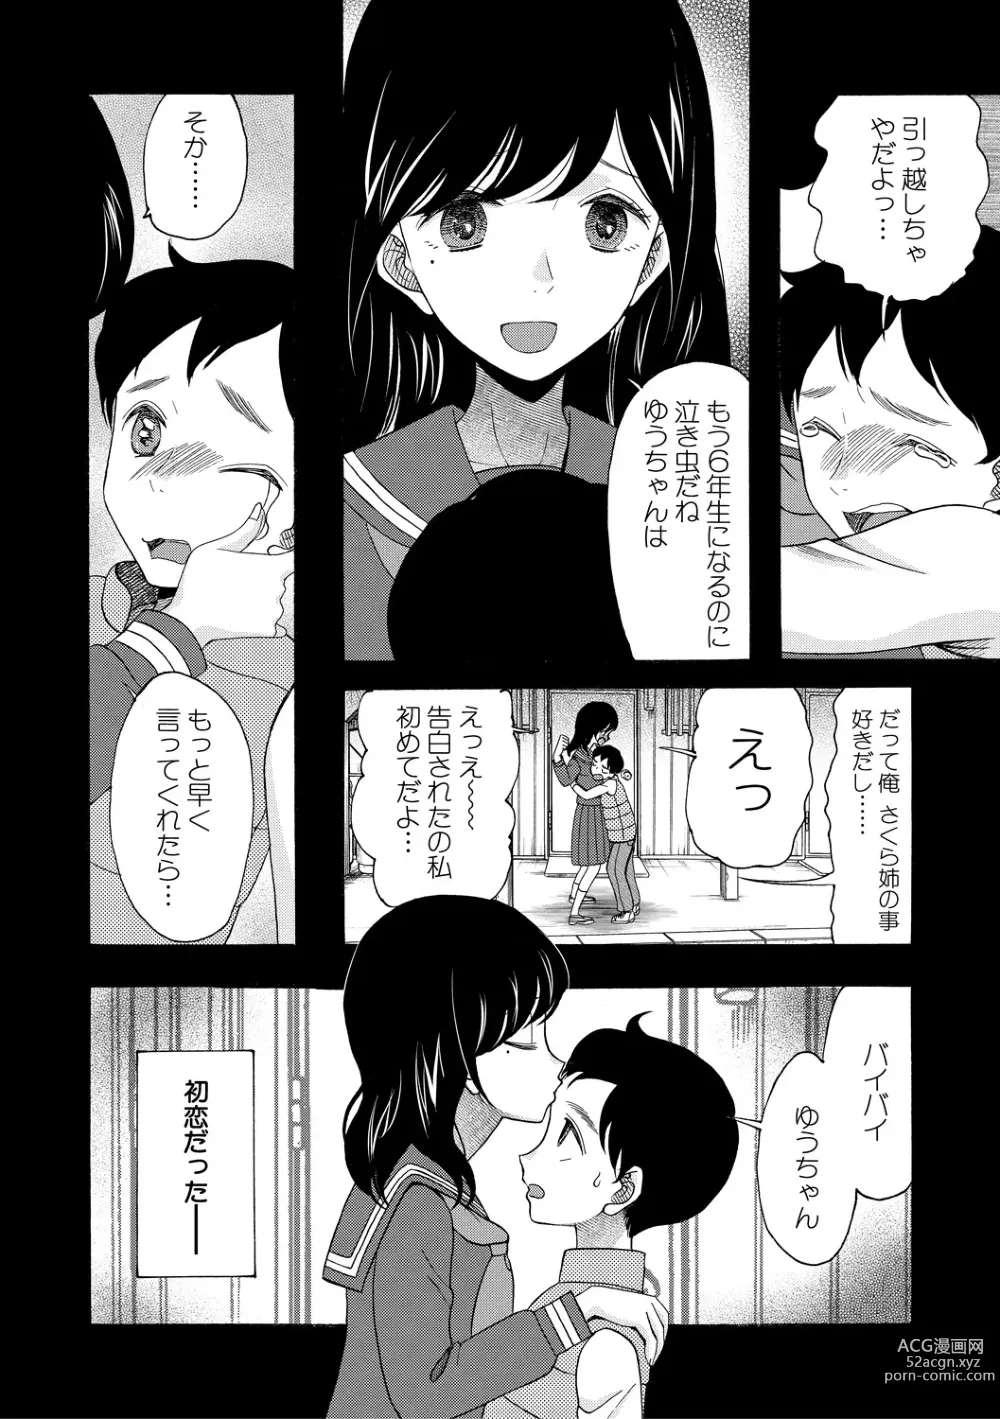 Page 8 of manga Soku Nuki Soku Hame Sakusei Gakuen